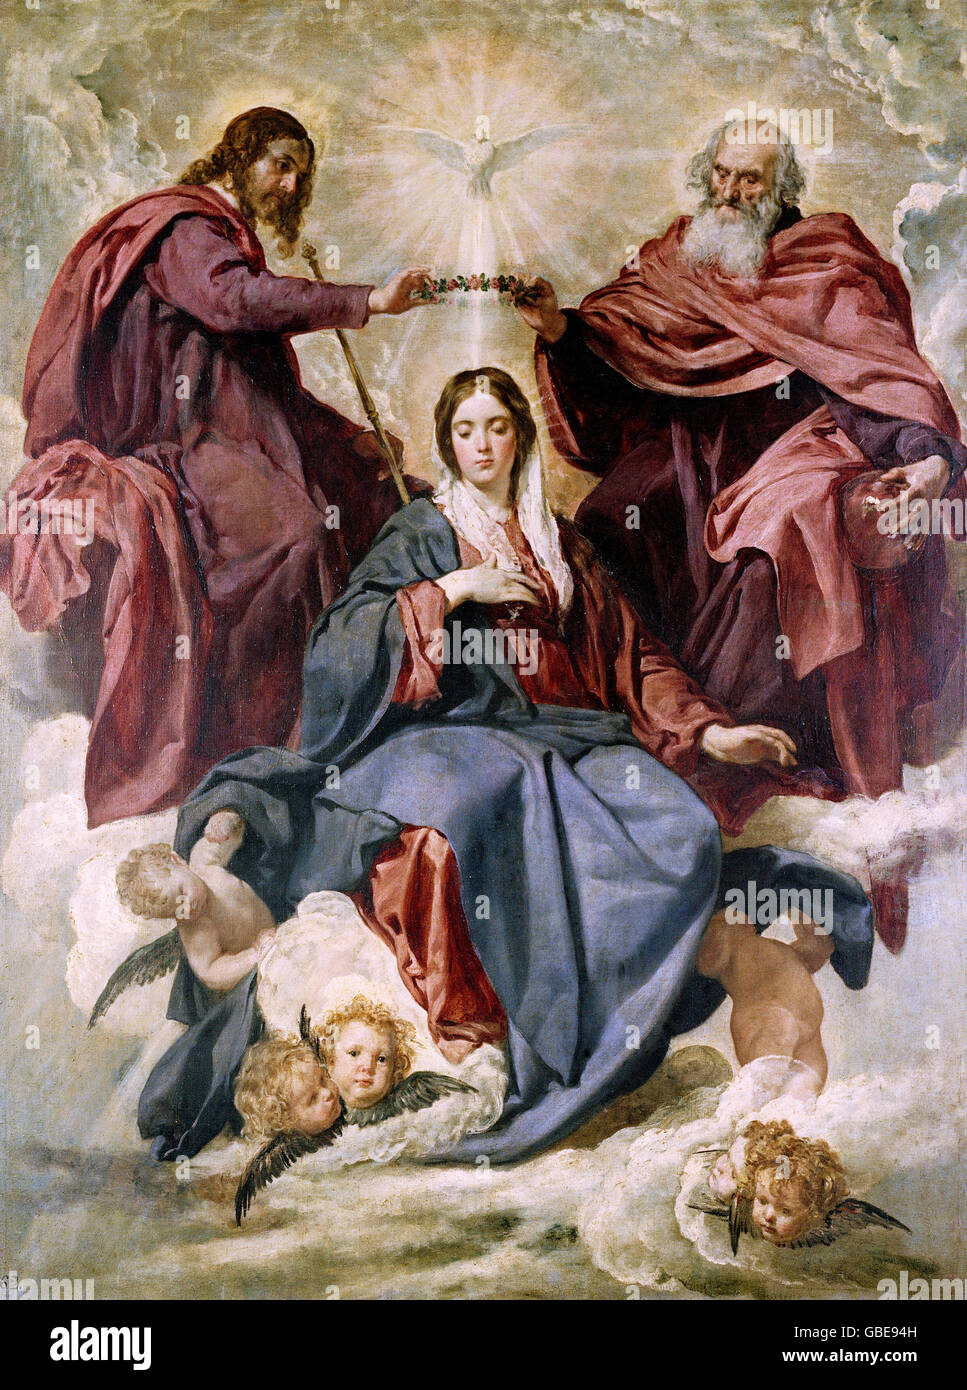 Beaux-arts, Velazquez, Diego Rodriguez de Silva y (1599 - 1660), peinture 'Coronacion de la Virgen' (Le couronnement de la Vierge), 1641 - 1644, huile sur toile, Prado, Madrid, Banque D'Images